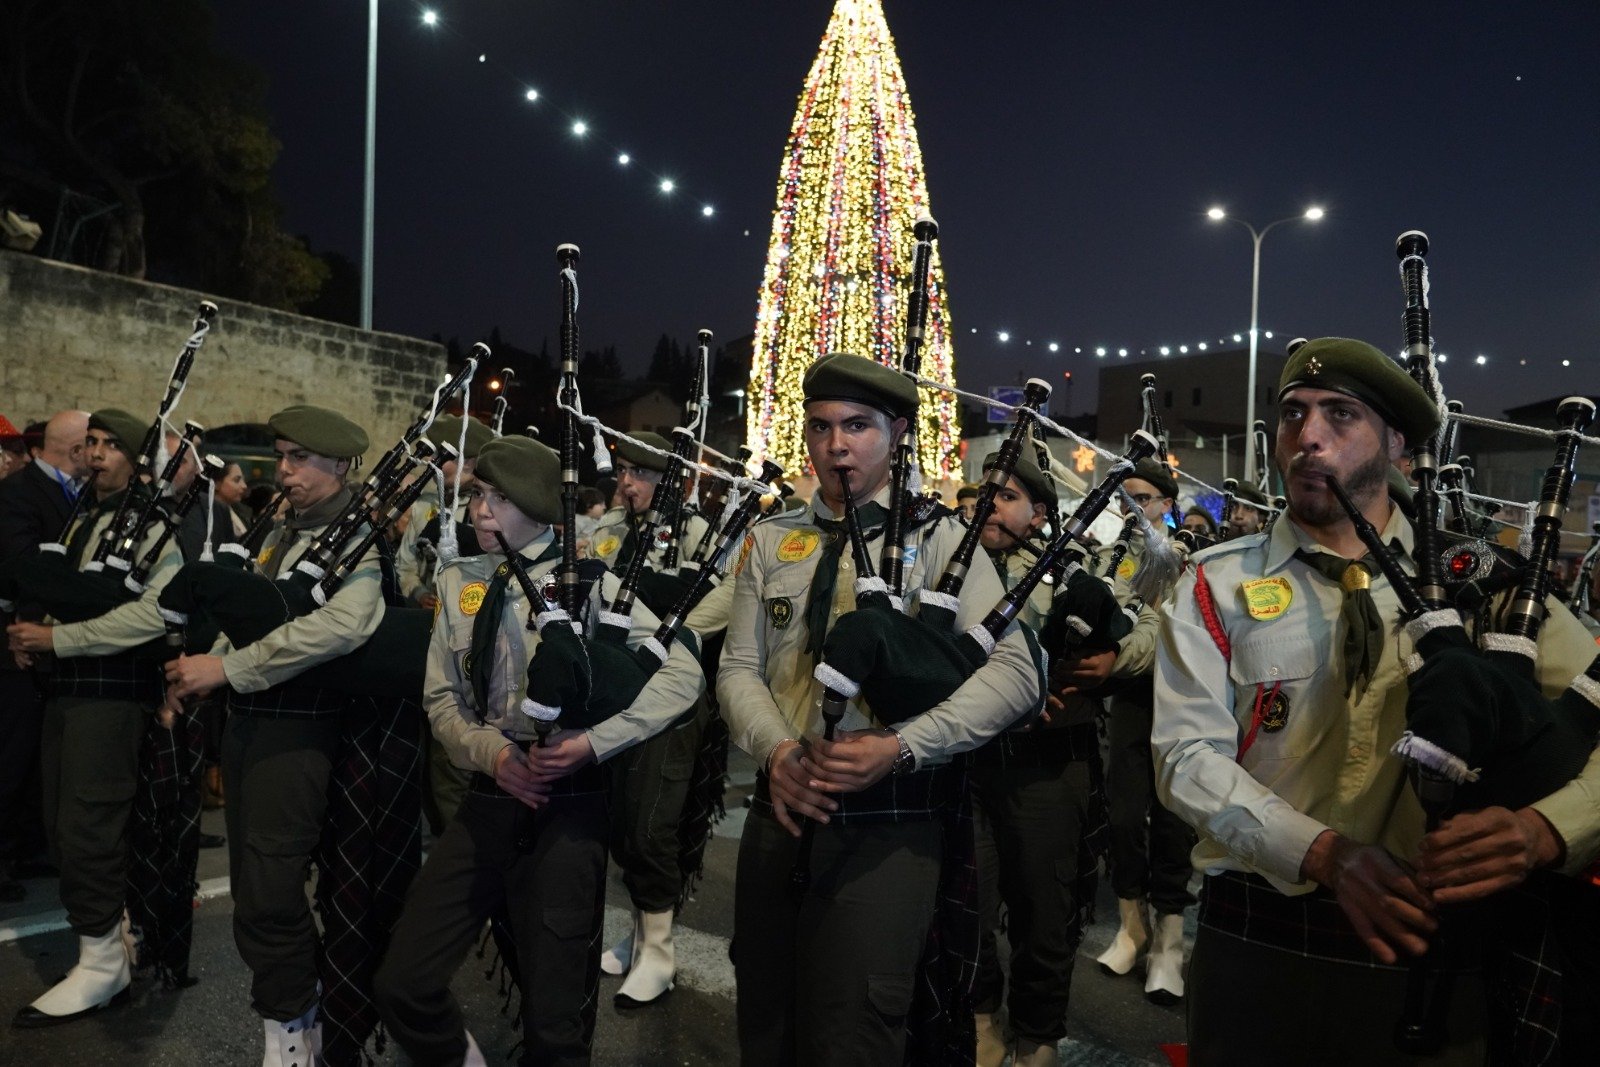 بالصور: "بكرا" يرصد فرحة استقبال الميلاد في الناصرة -175